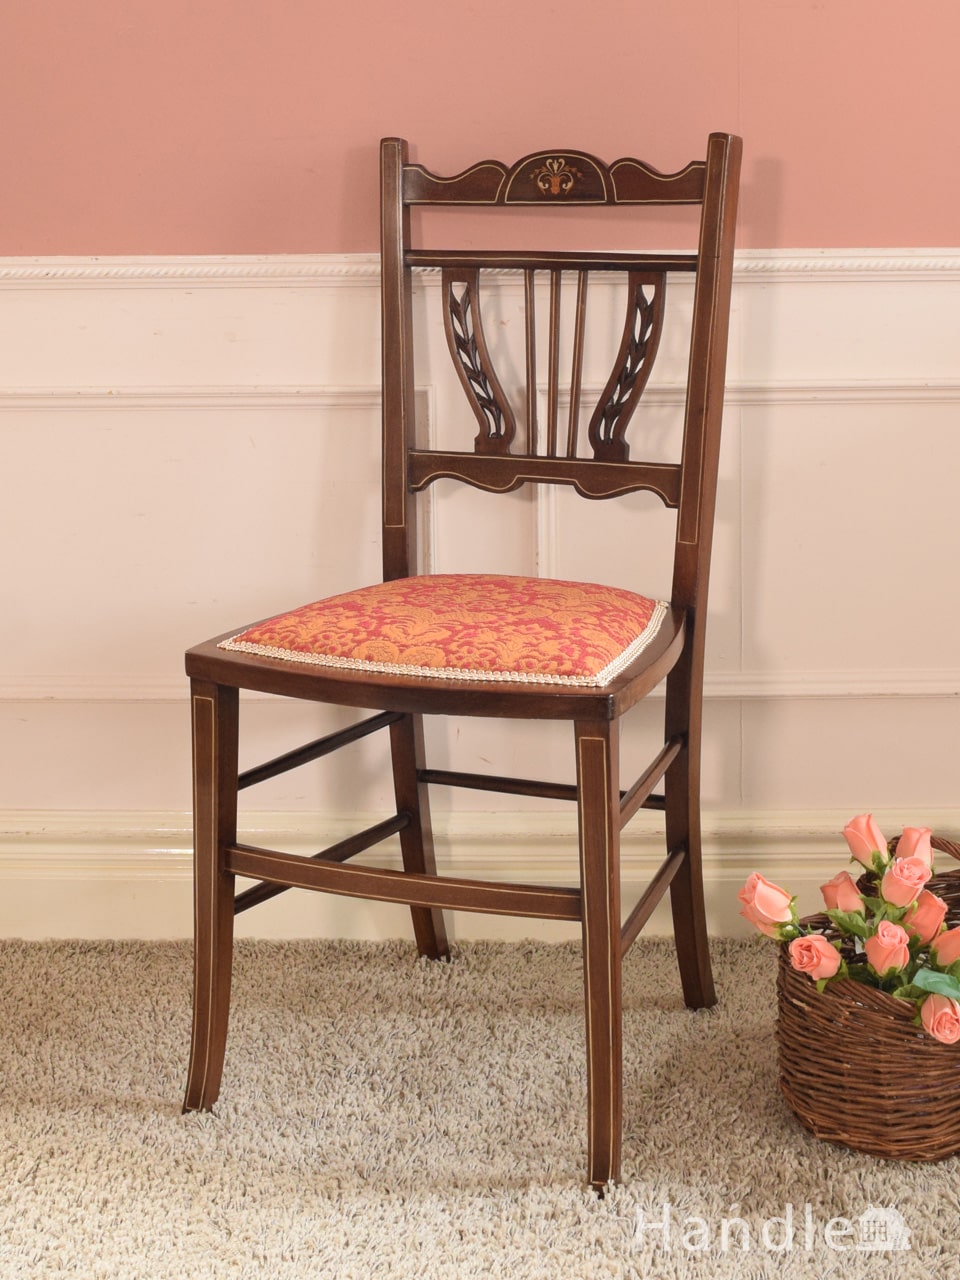 アンティークの美しい椅子、高級感漂う装飾をまとったサロンチェア (k-1714-c)